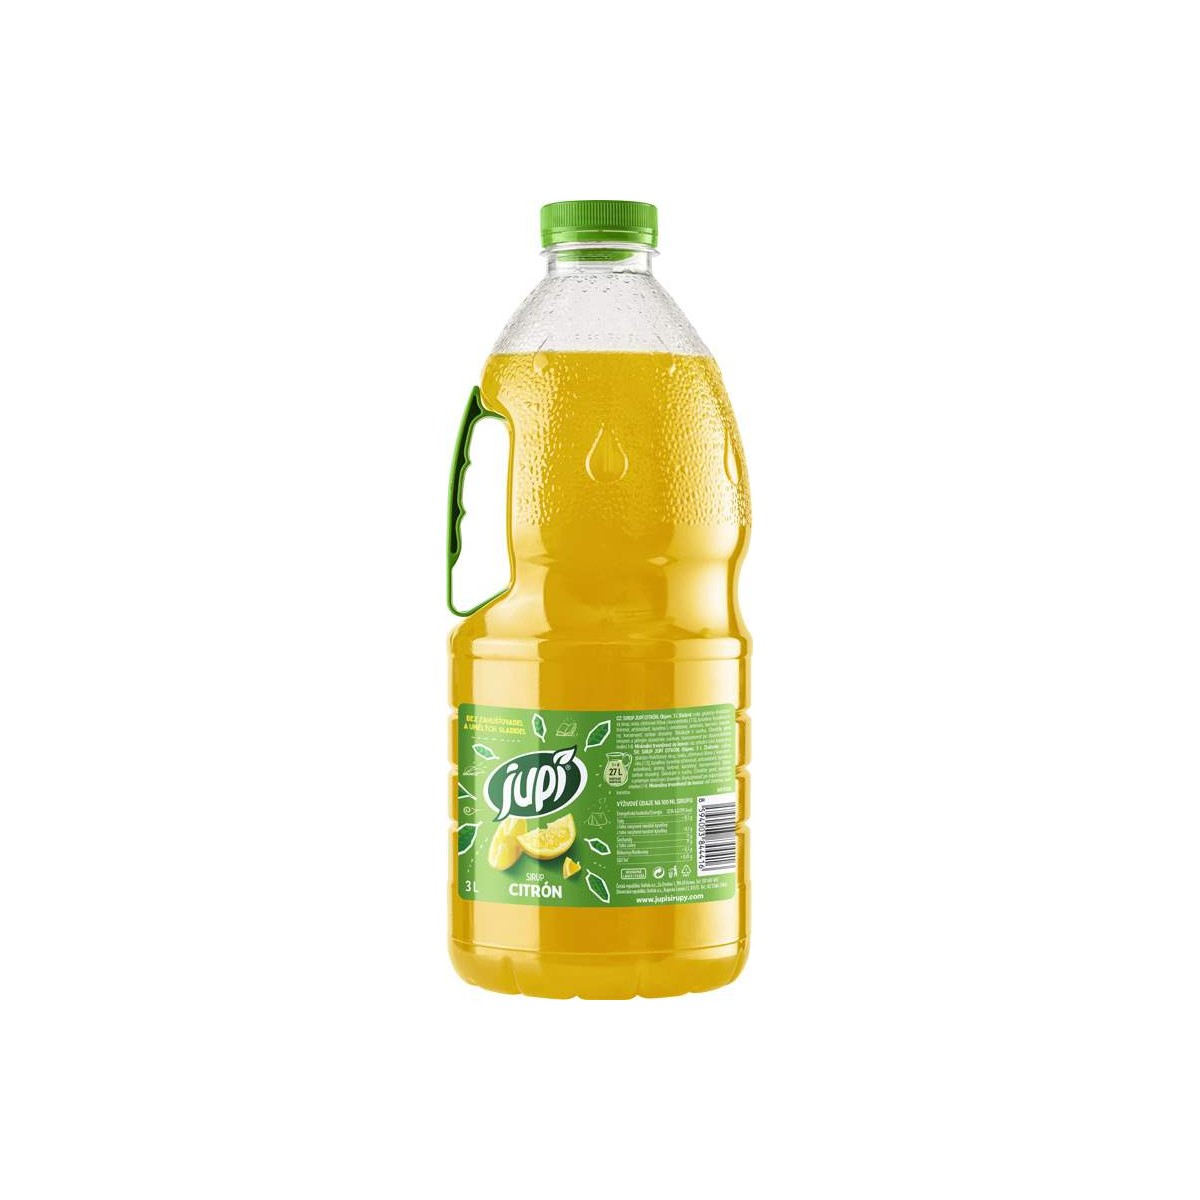 Ovocný sirup JUPÍ citron 3l - PET